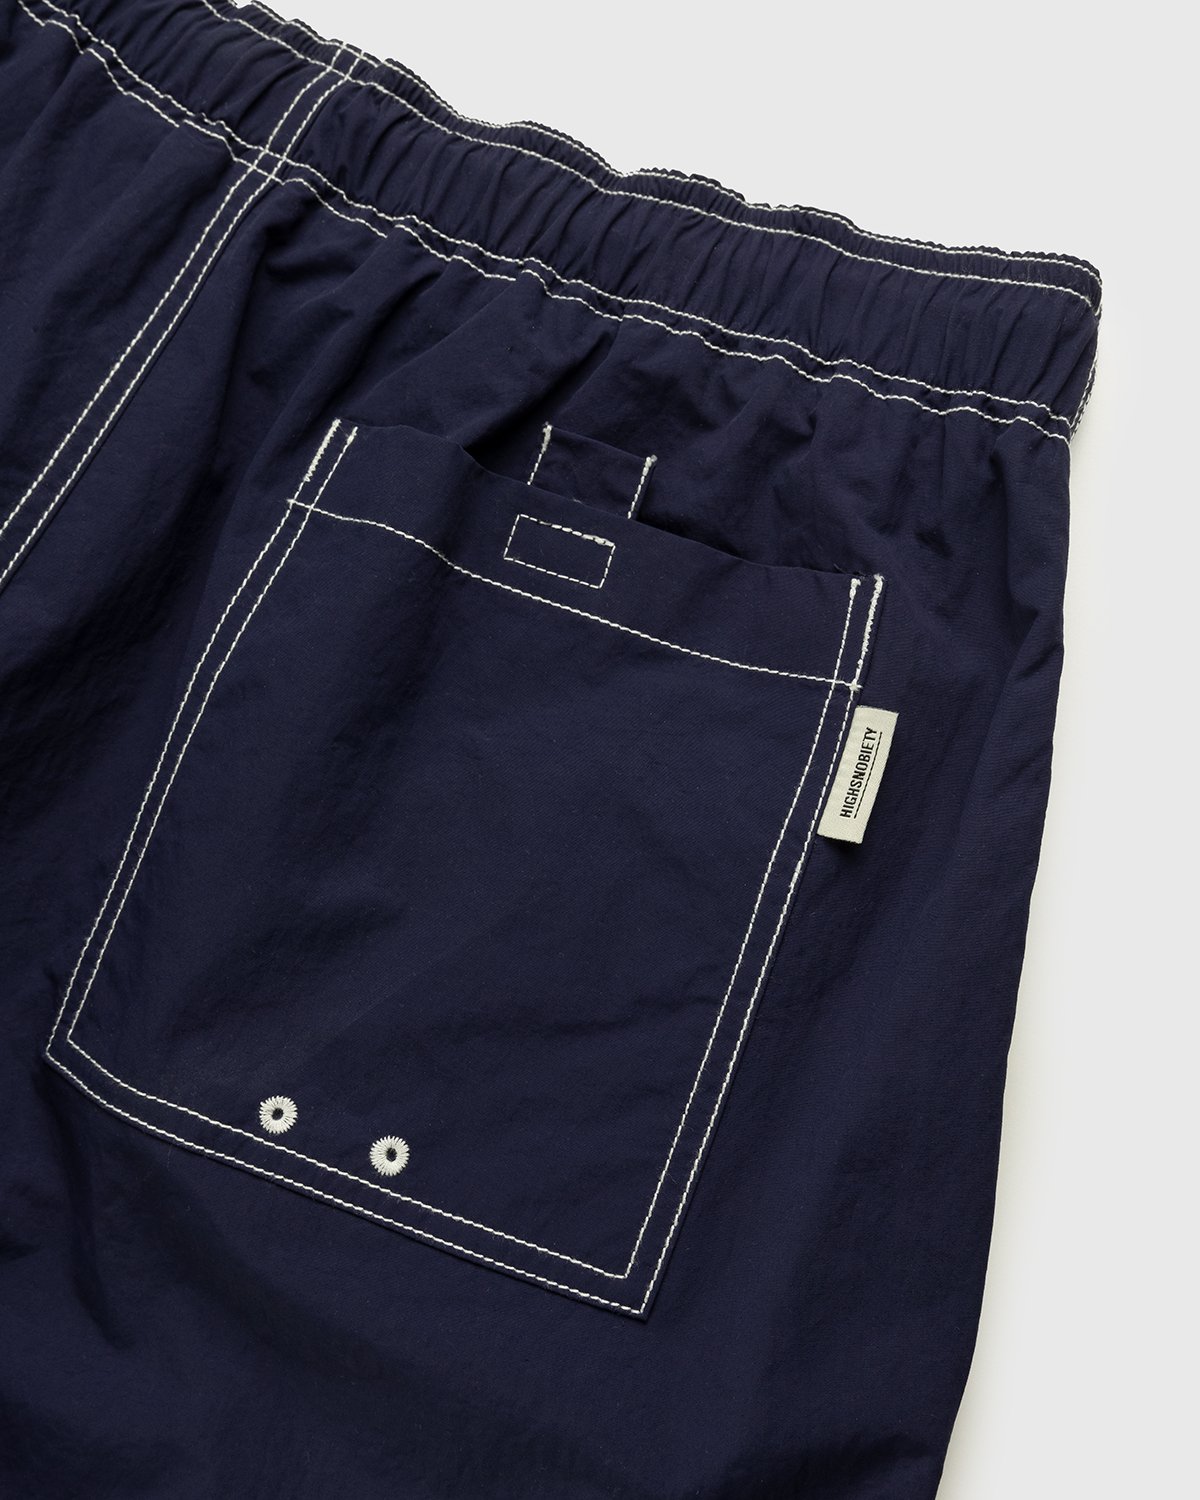 Highsnobiety - Contrast Brushed Nylon Water Shorts Navy - Clothing - Blue - Image 3